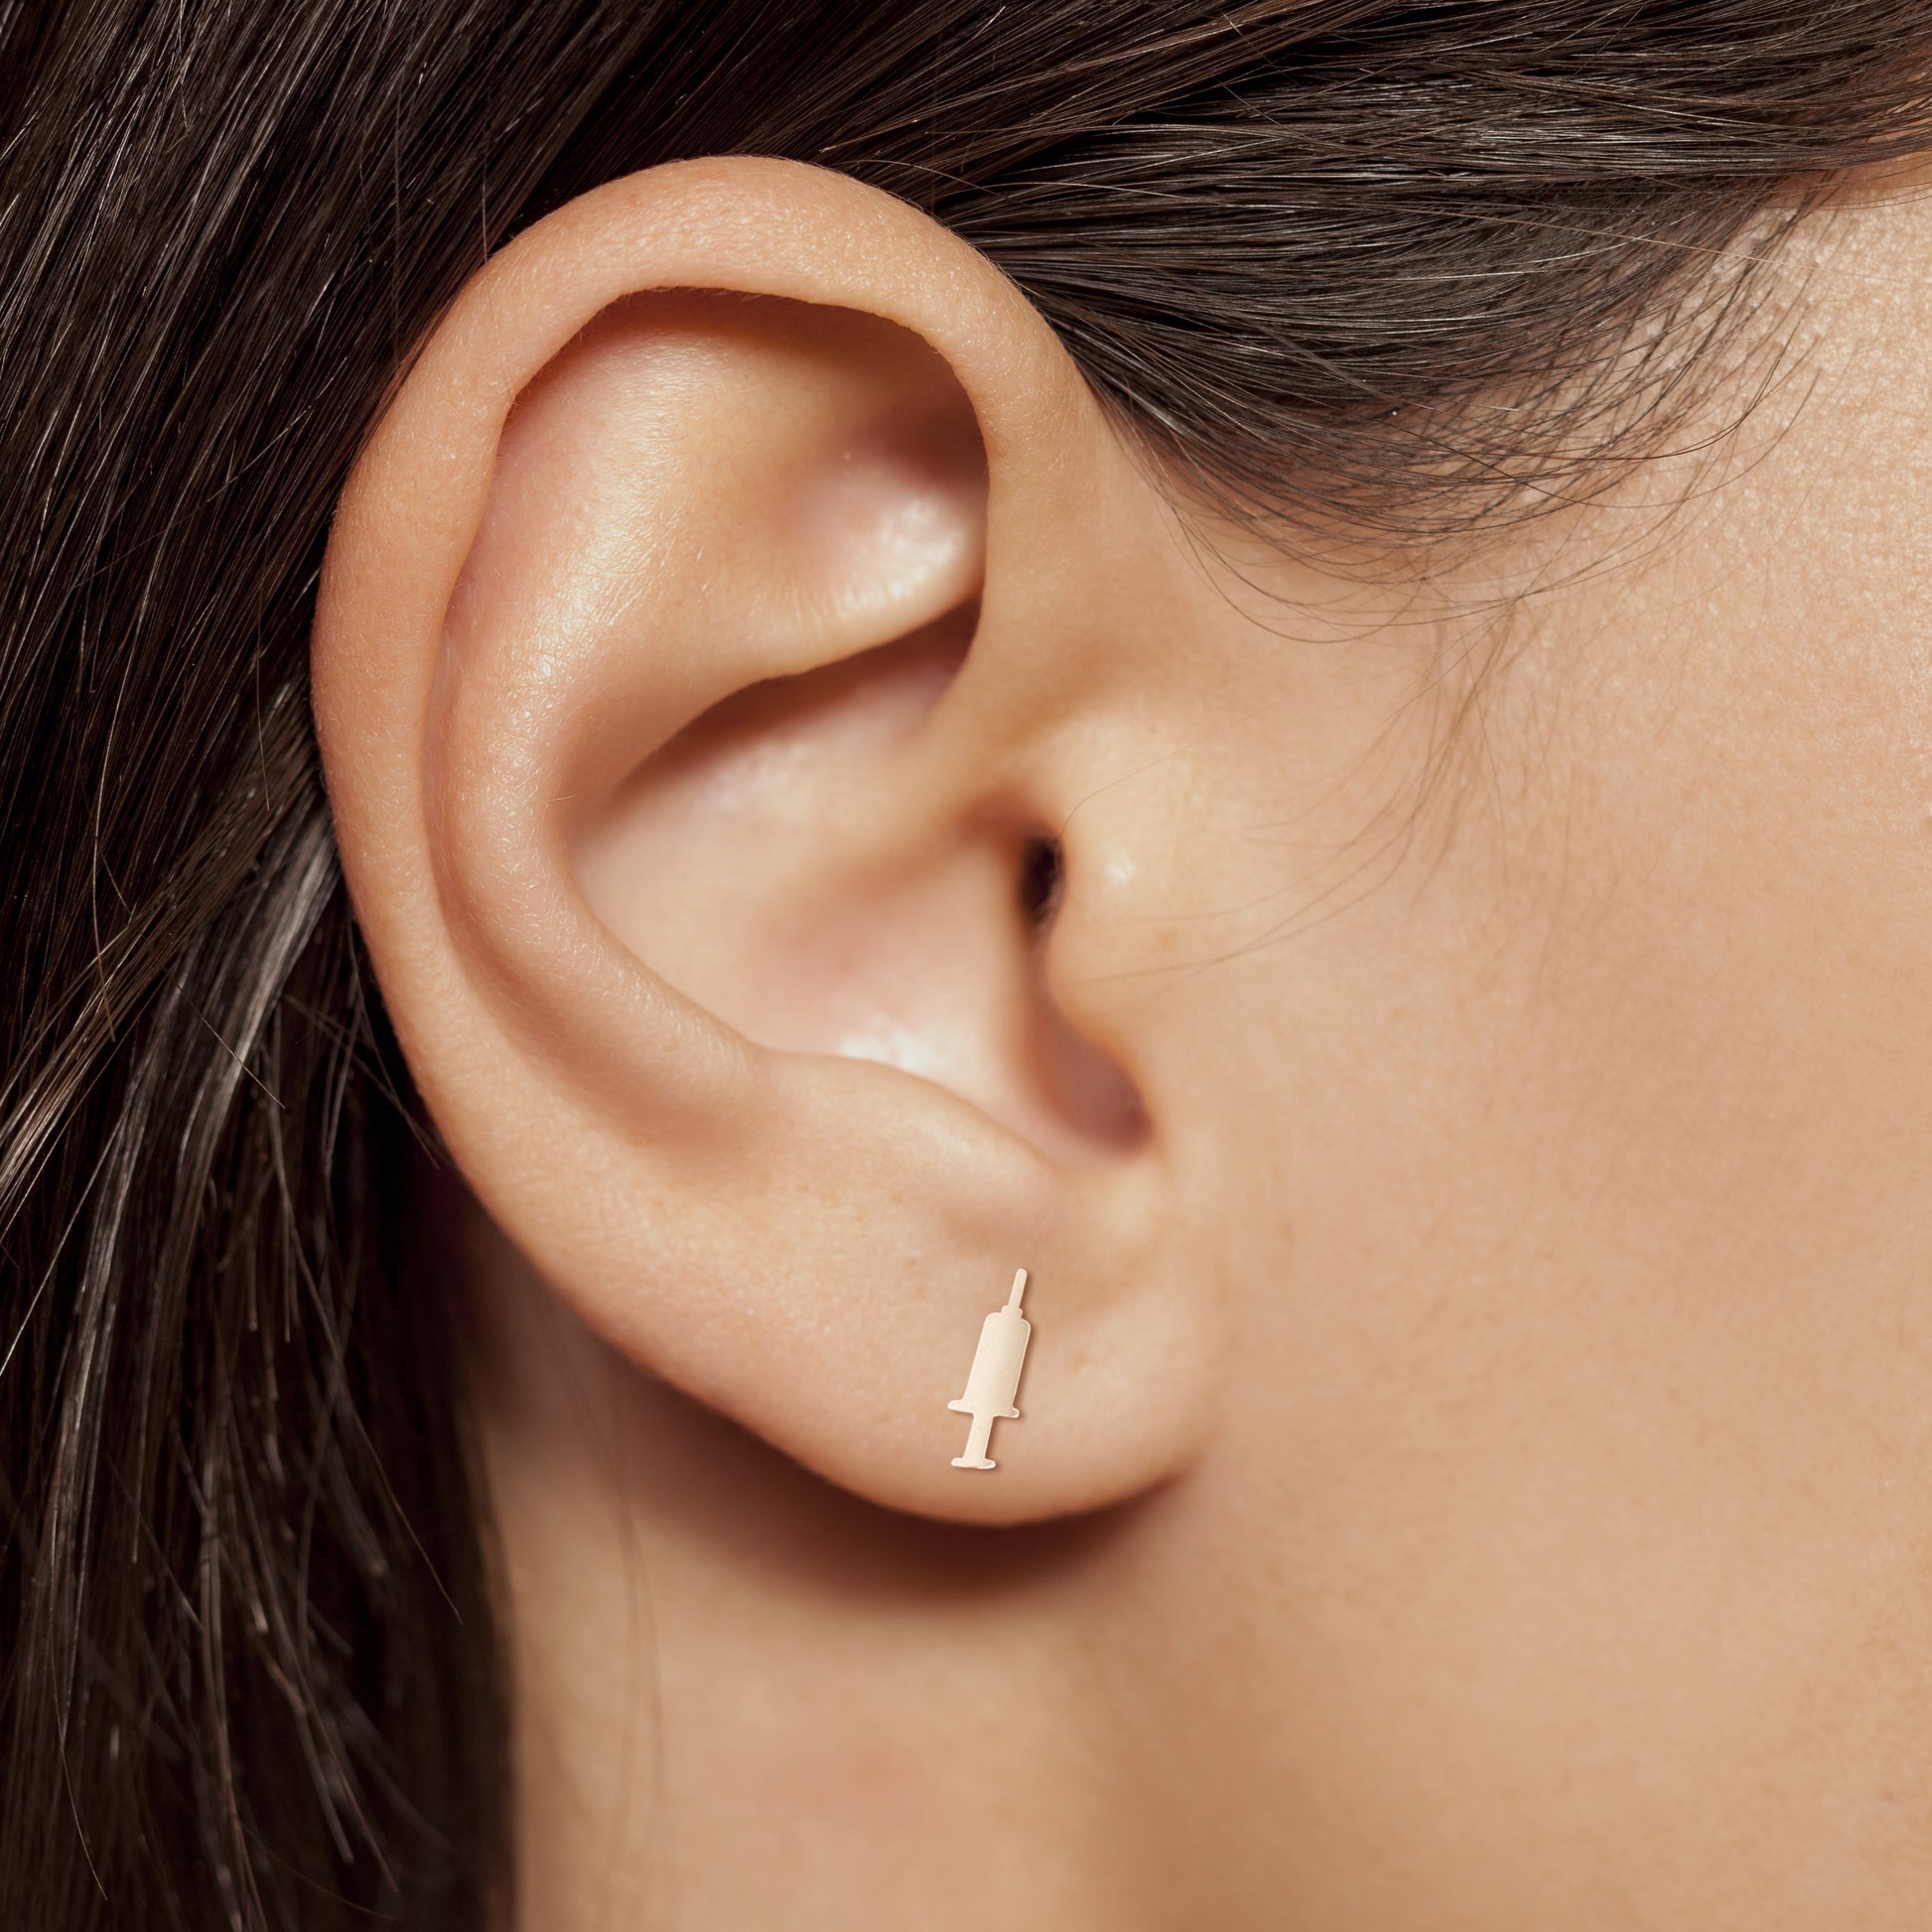 Syringe earring in rose gold on nurse model ear